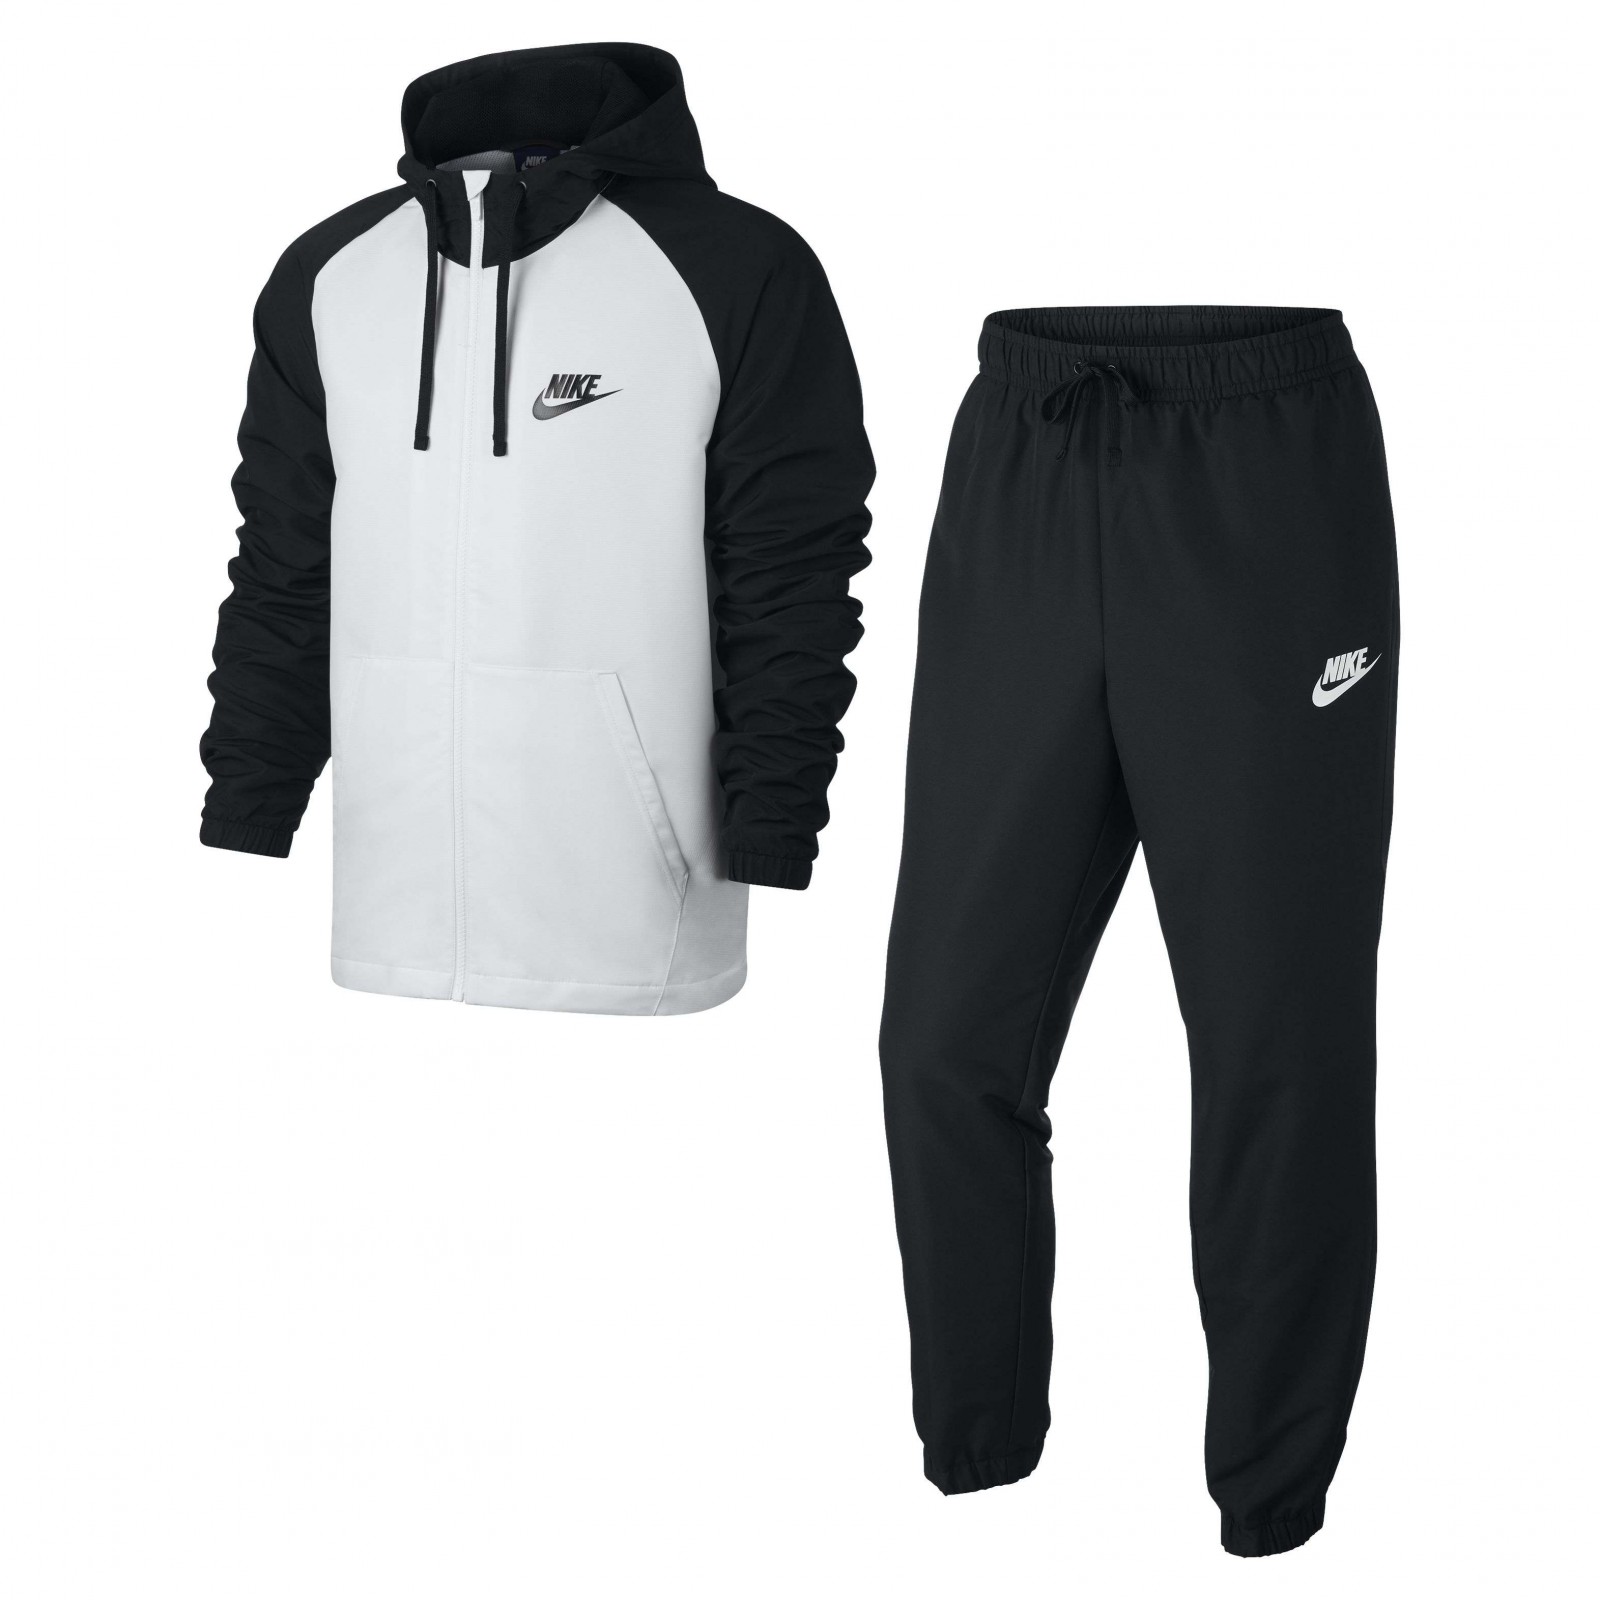 Спортивный костюм balance. Костюм Nike Sportswear Tracksuit. Костюм Nike NSW Woven men's track Suit черный.